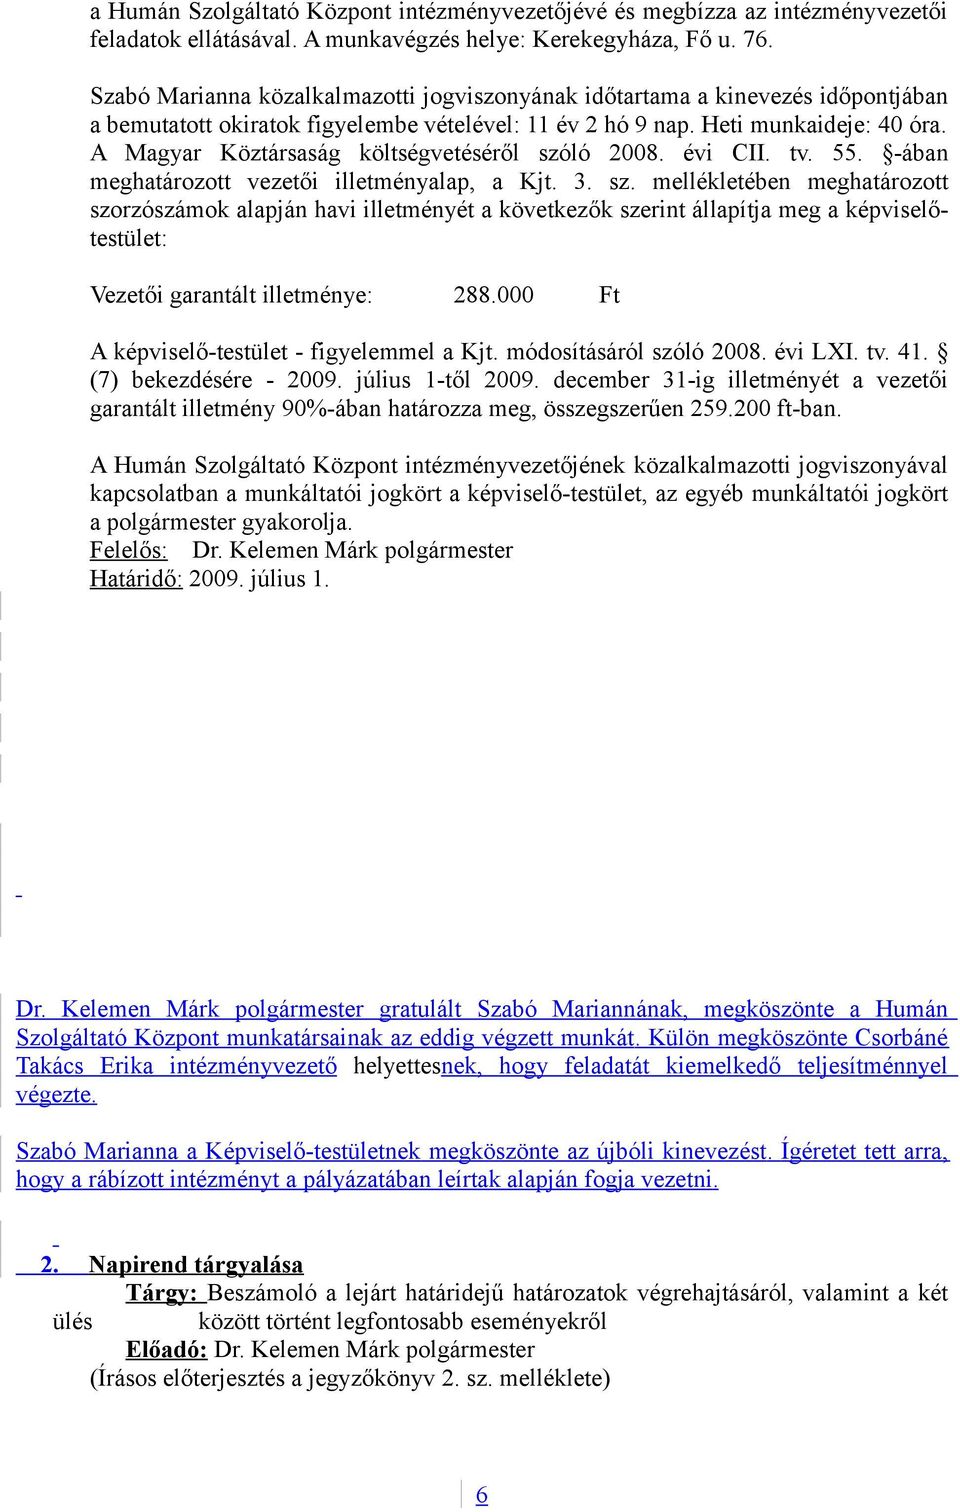 A Magyar Köztársaság költségvetéséről szóló 2008. évi CII. tv. 55. -ában meghatározott vezetői illetményalap, a Kjt. 3. sz. mellékletében meghatározott szorzószámok alapján havi illetményét a következők szerint állapítja meg a képviselőtestület: Vezetői garantált illetménye: 288.